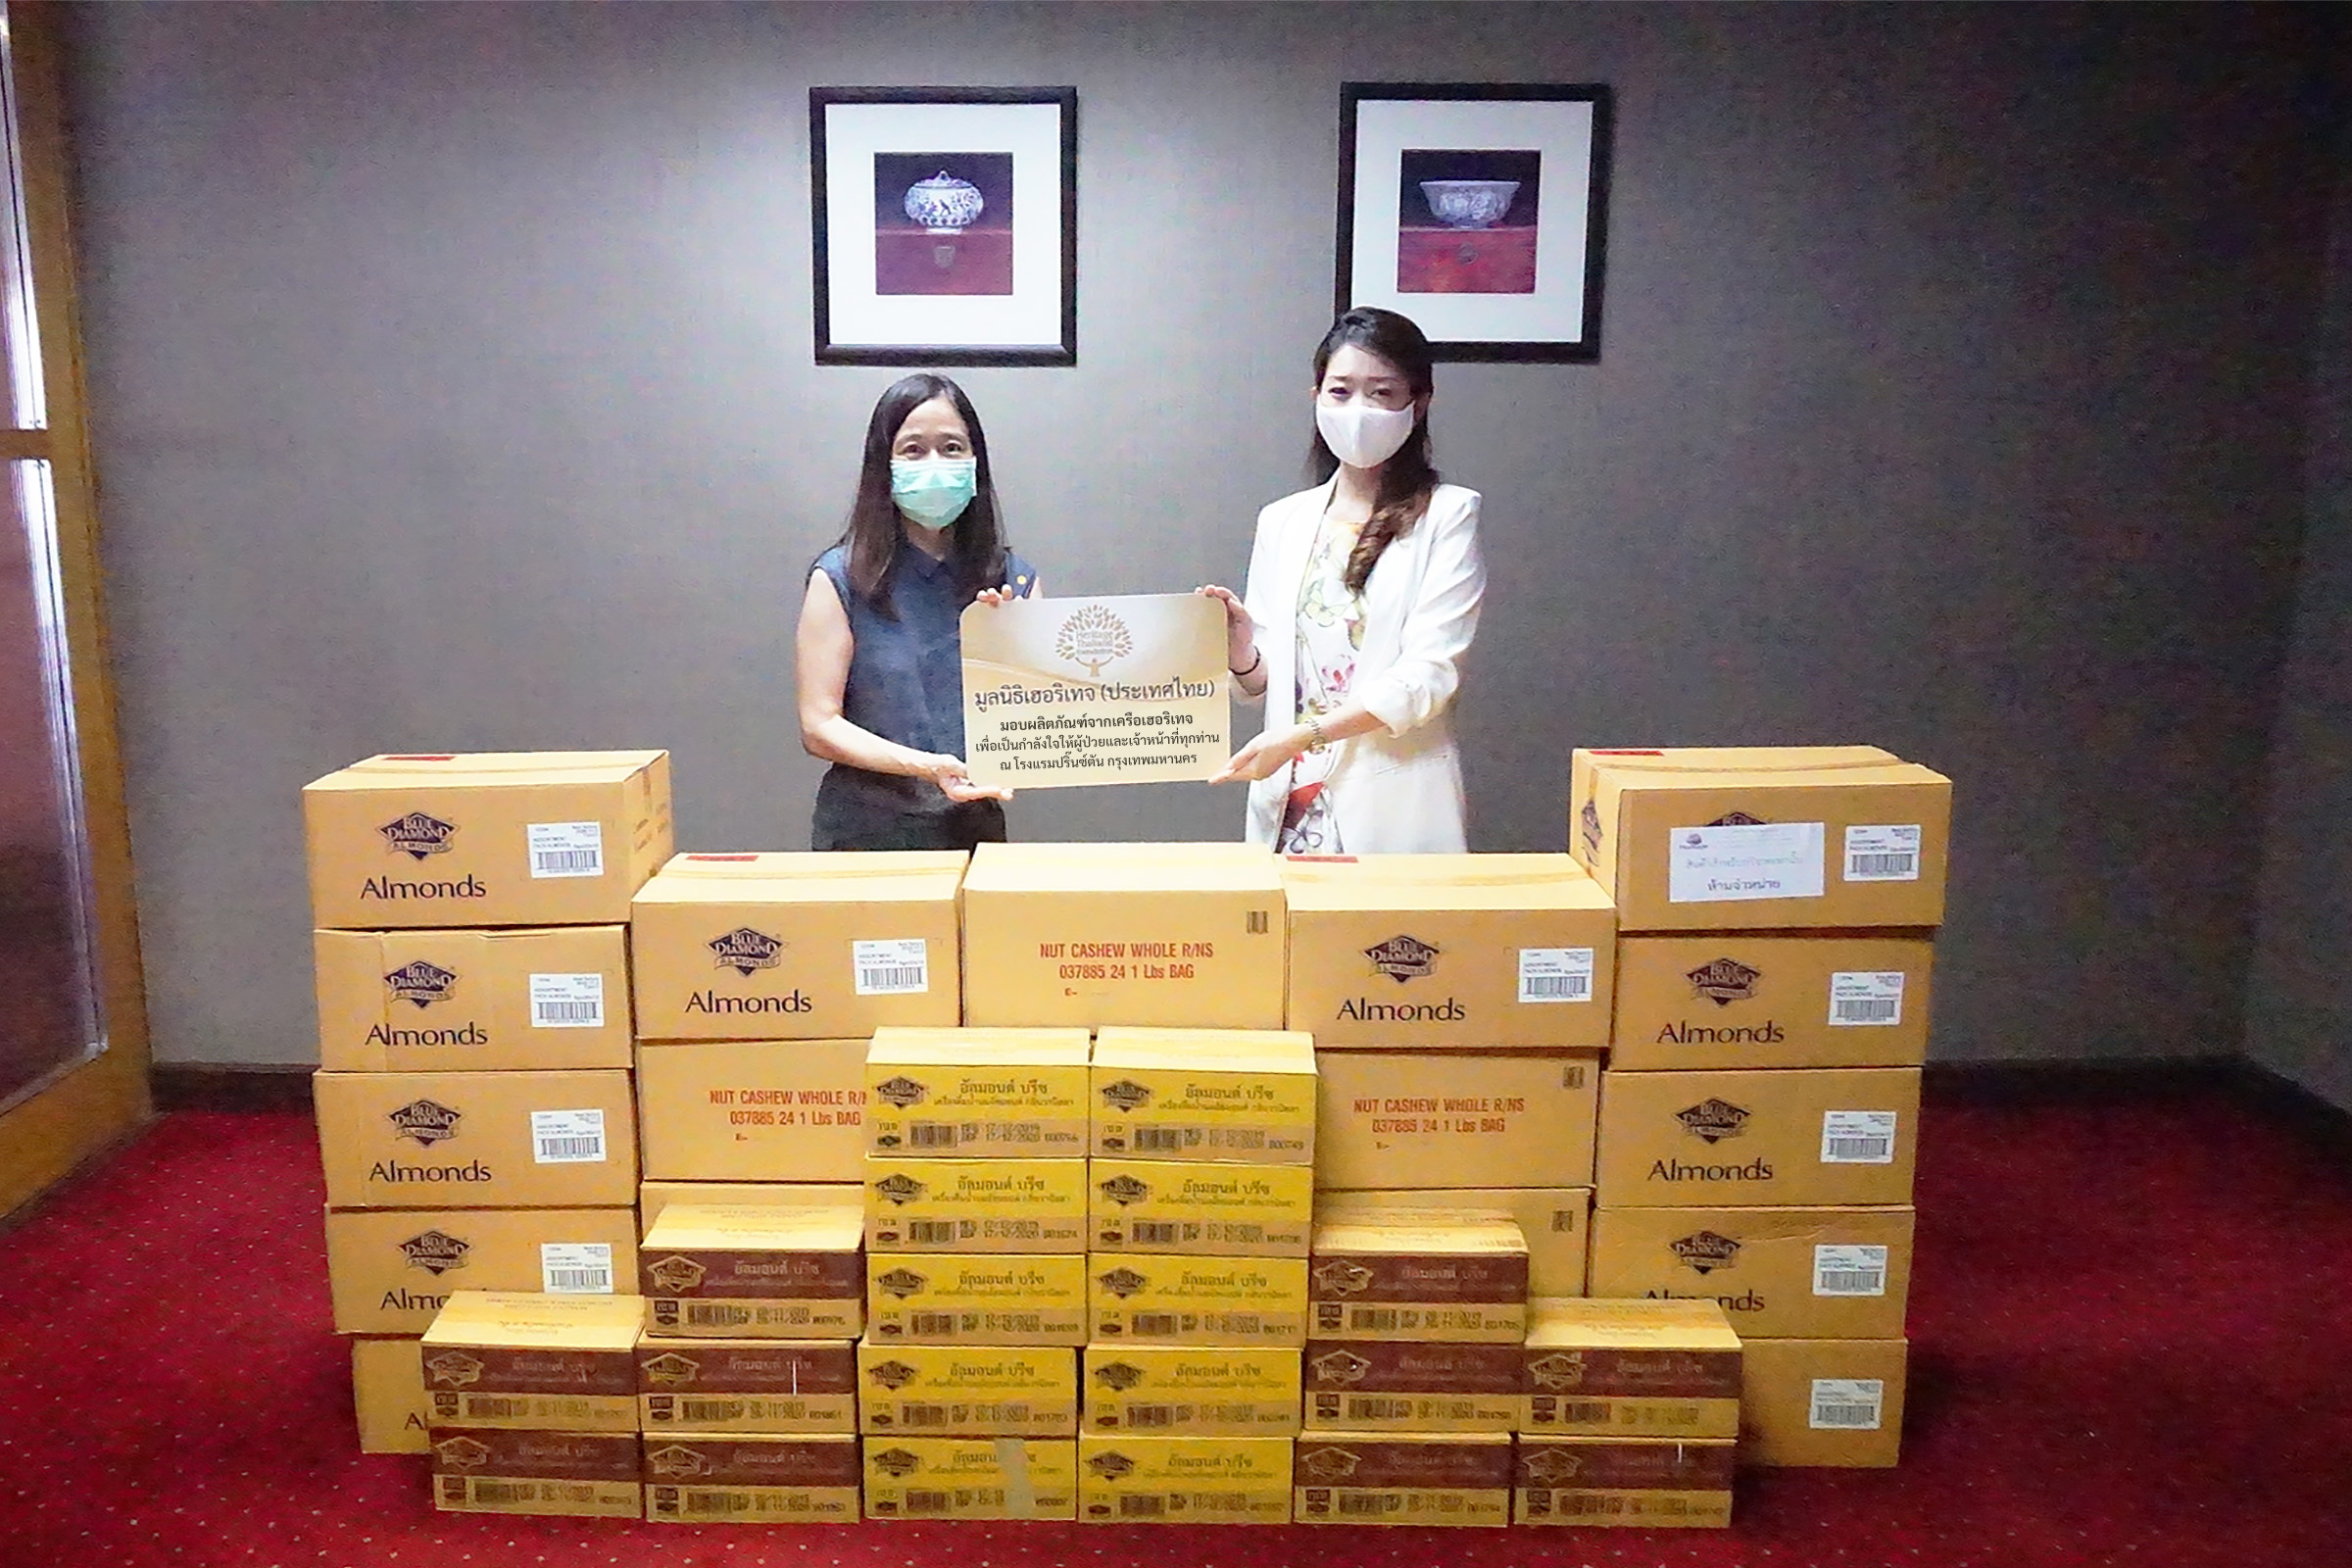 ภาพข่าว: มูลนิธิเฮอริเทจประเทศไทย ส่งมอบผลิตภัณฑ์ในเครือเฮอริเทจ เพื่อช่วยเหลือผู้ป่วย บุคลากรทางการแพทย์ และผู้รับผลกระทบจากโควิด 19